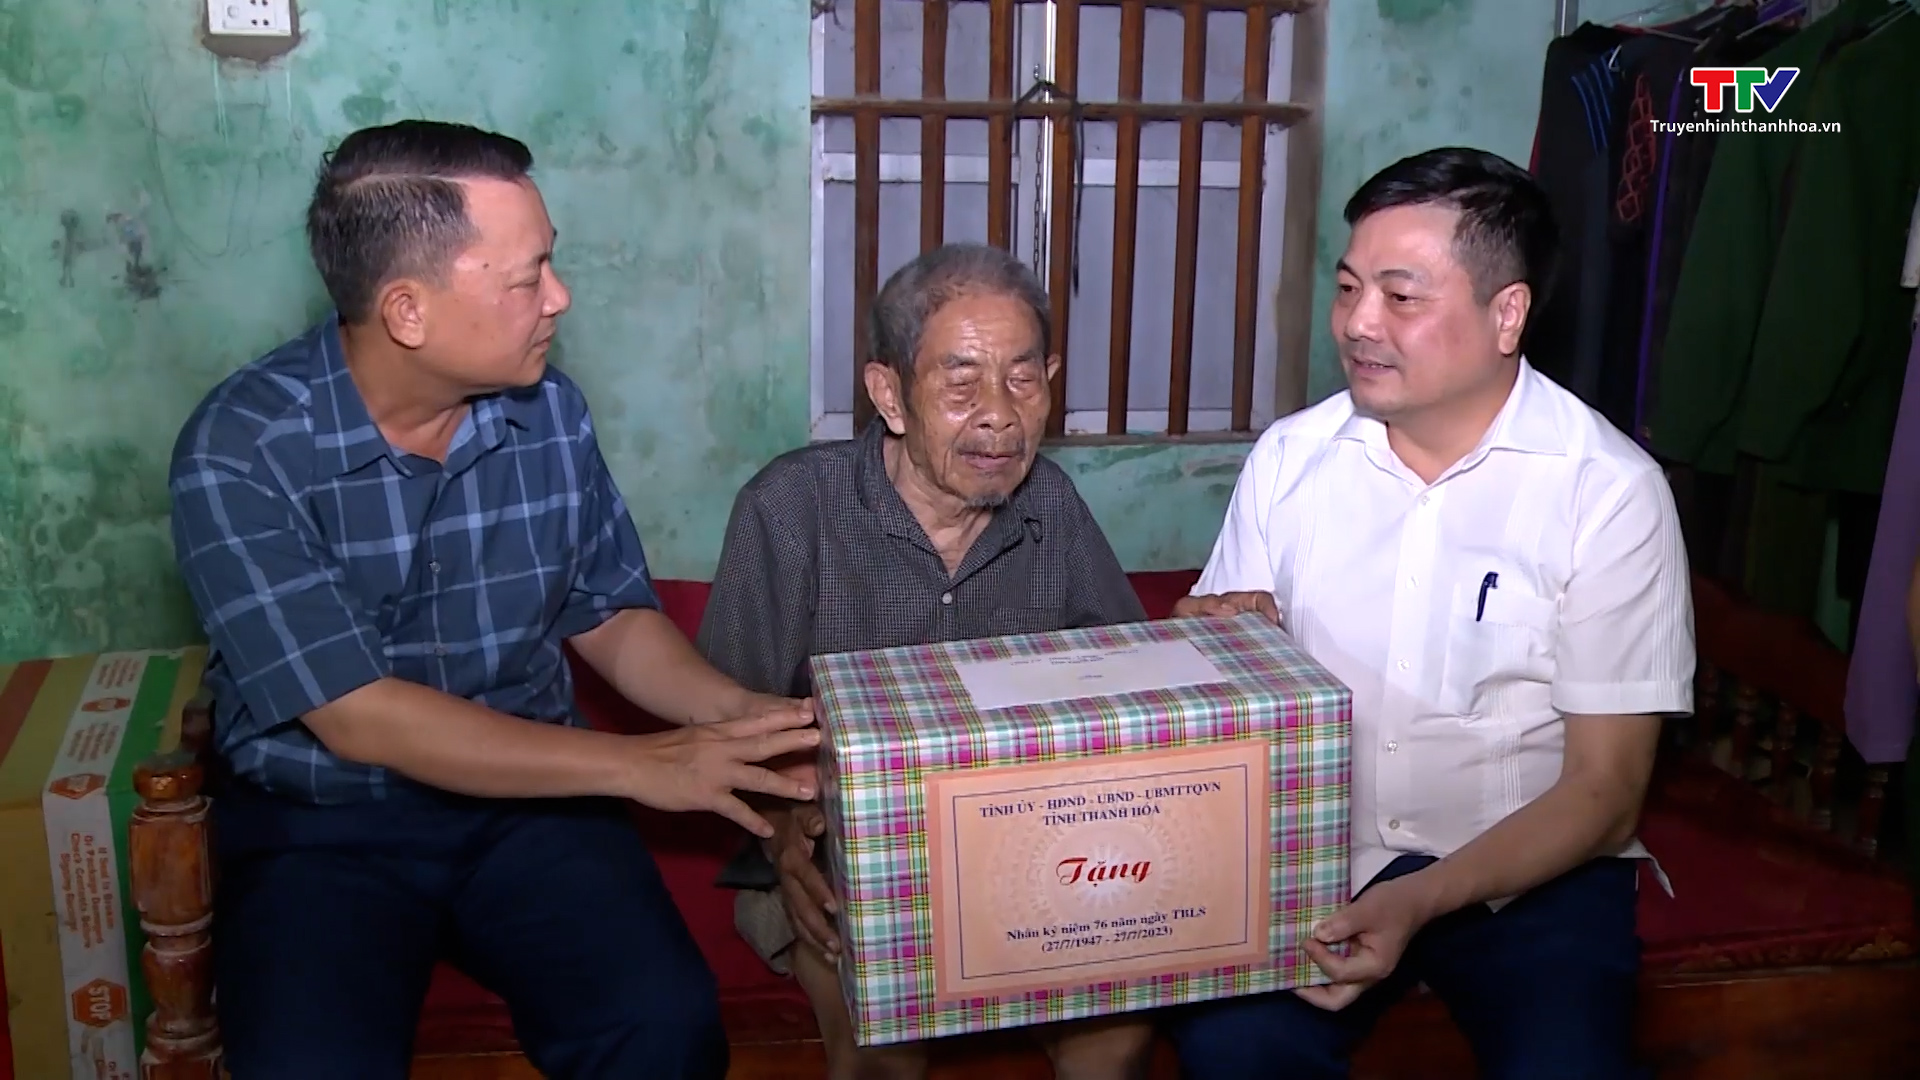 Chỉ huy trưởng Bộ chỉ huy quân sự tỉnh Lê Văn Diện viếng nghĩa trang liệt sỹ và thăm, tặng quà các gia đình chính sách tại huyện Như Thanh - Ảnh 3.